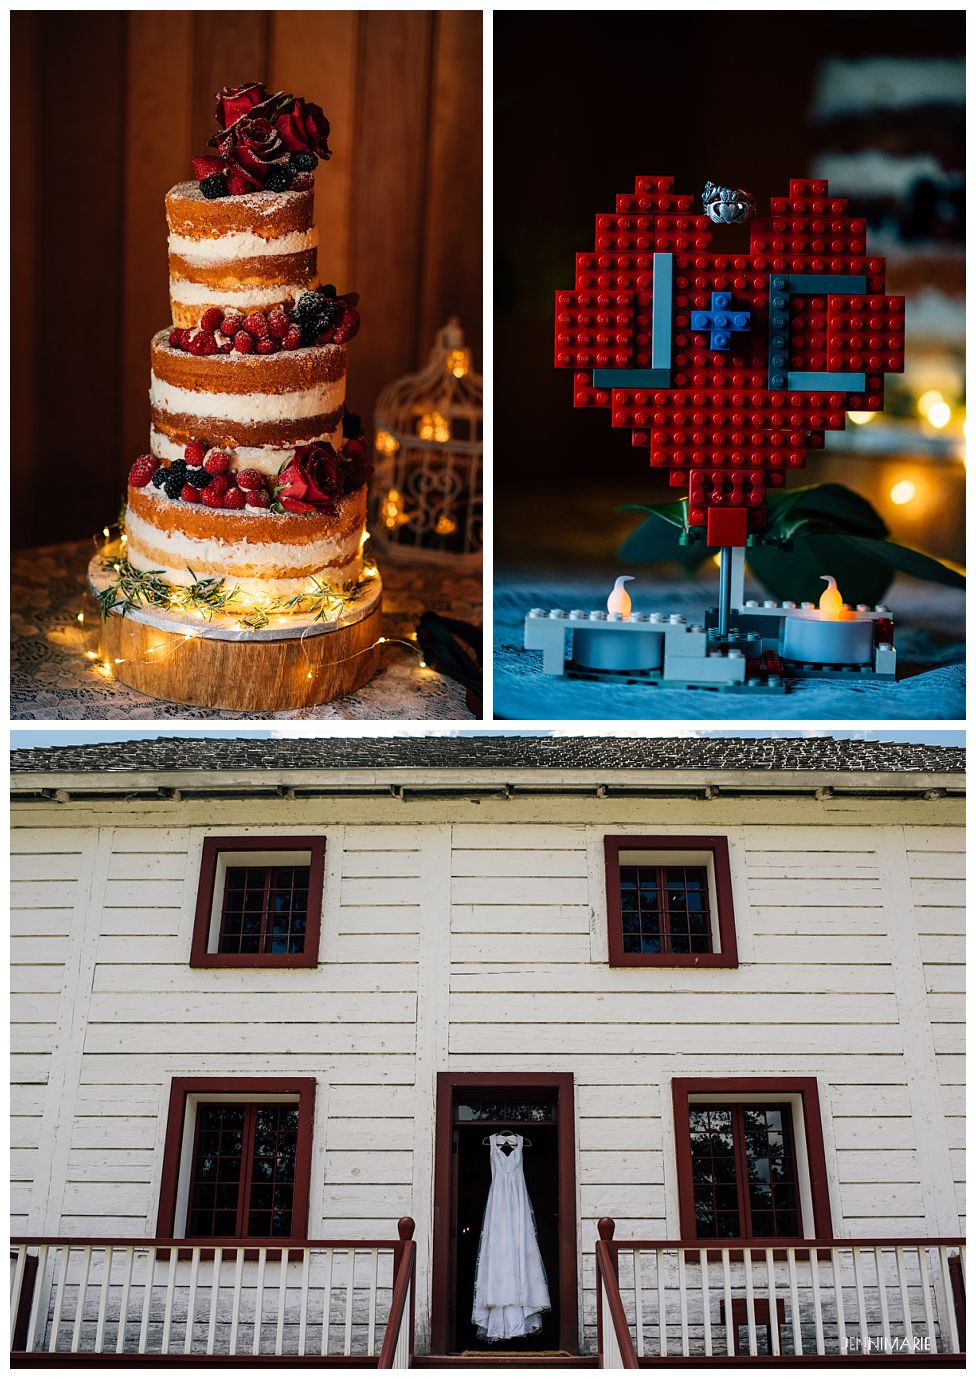 Lego wedding details